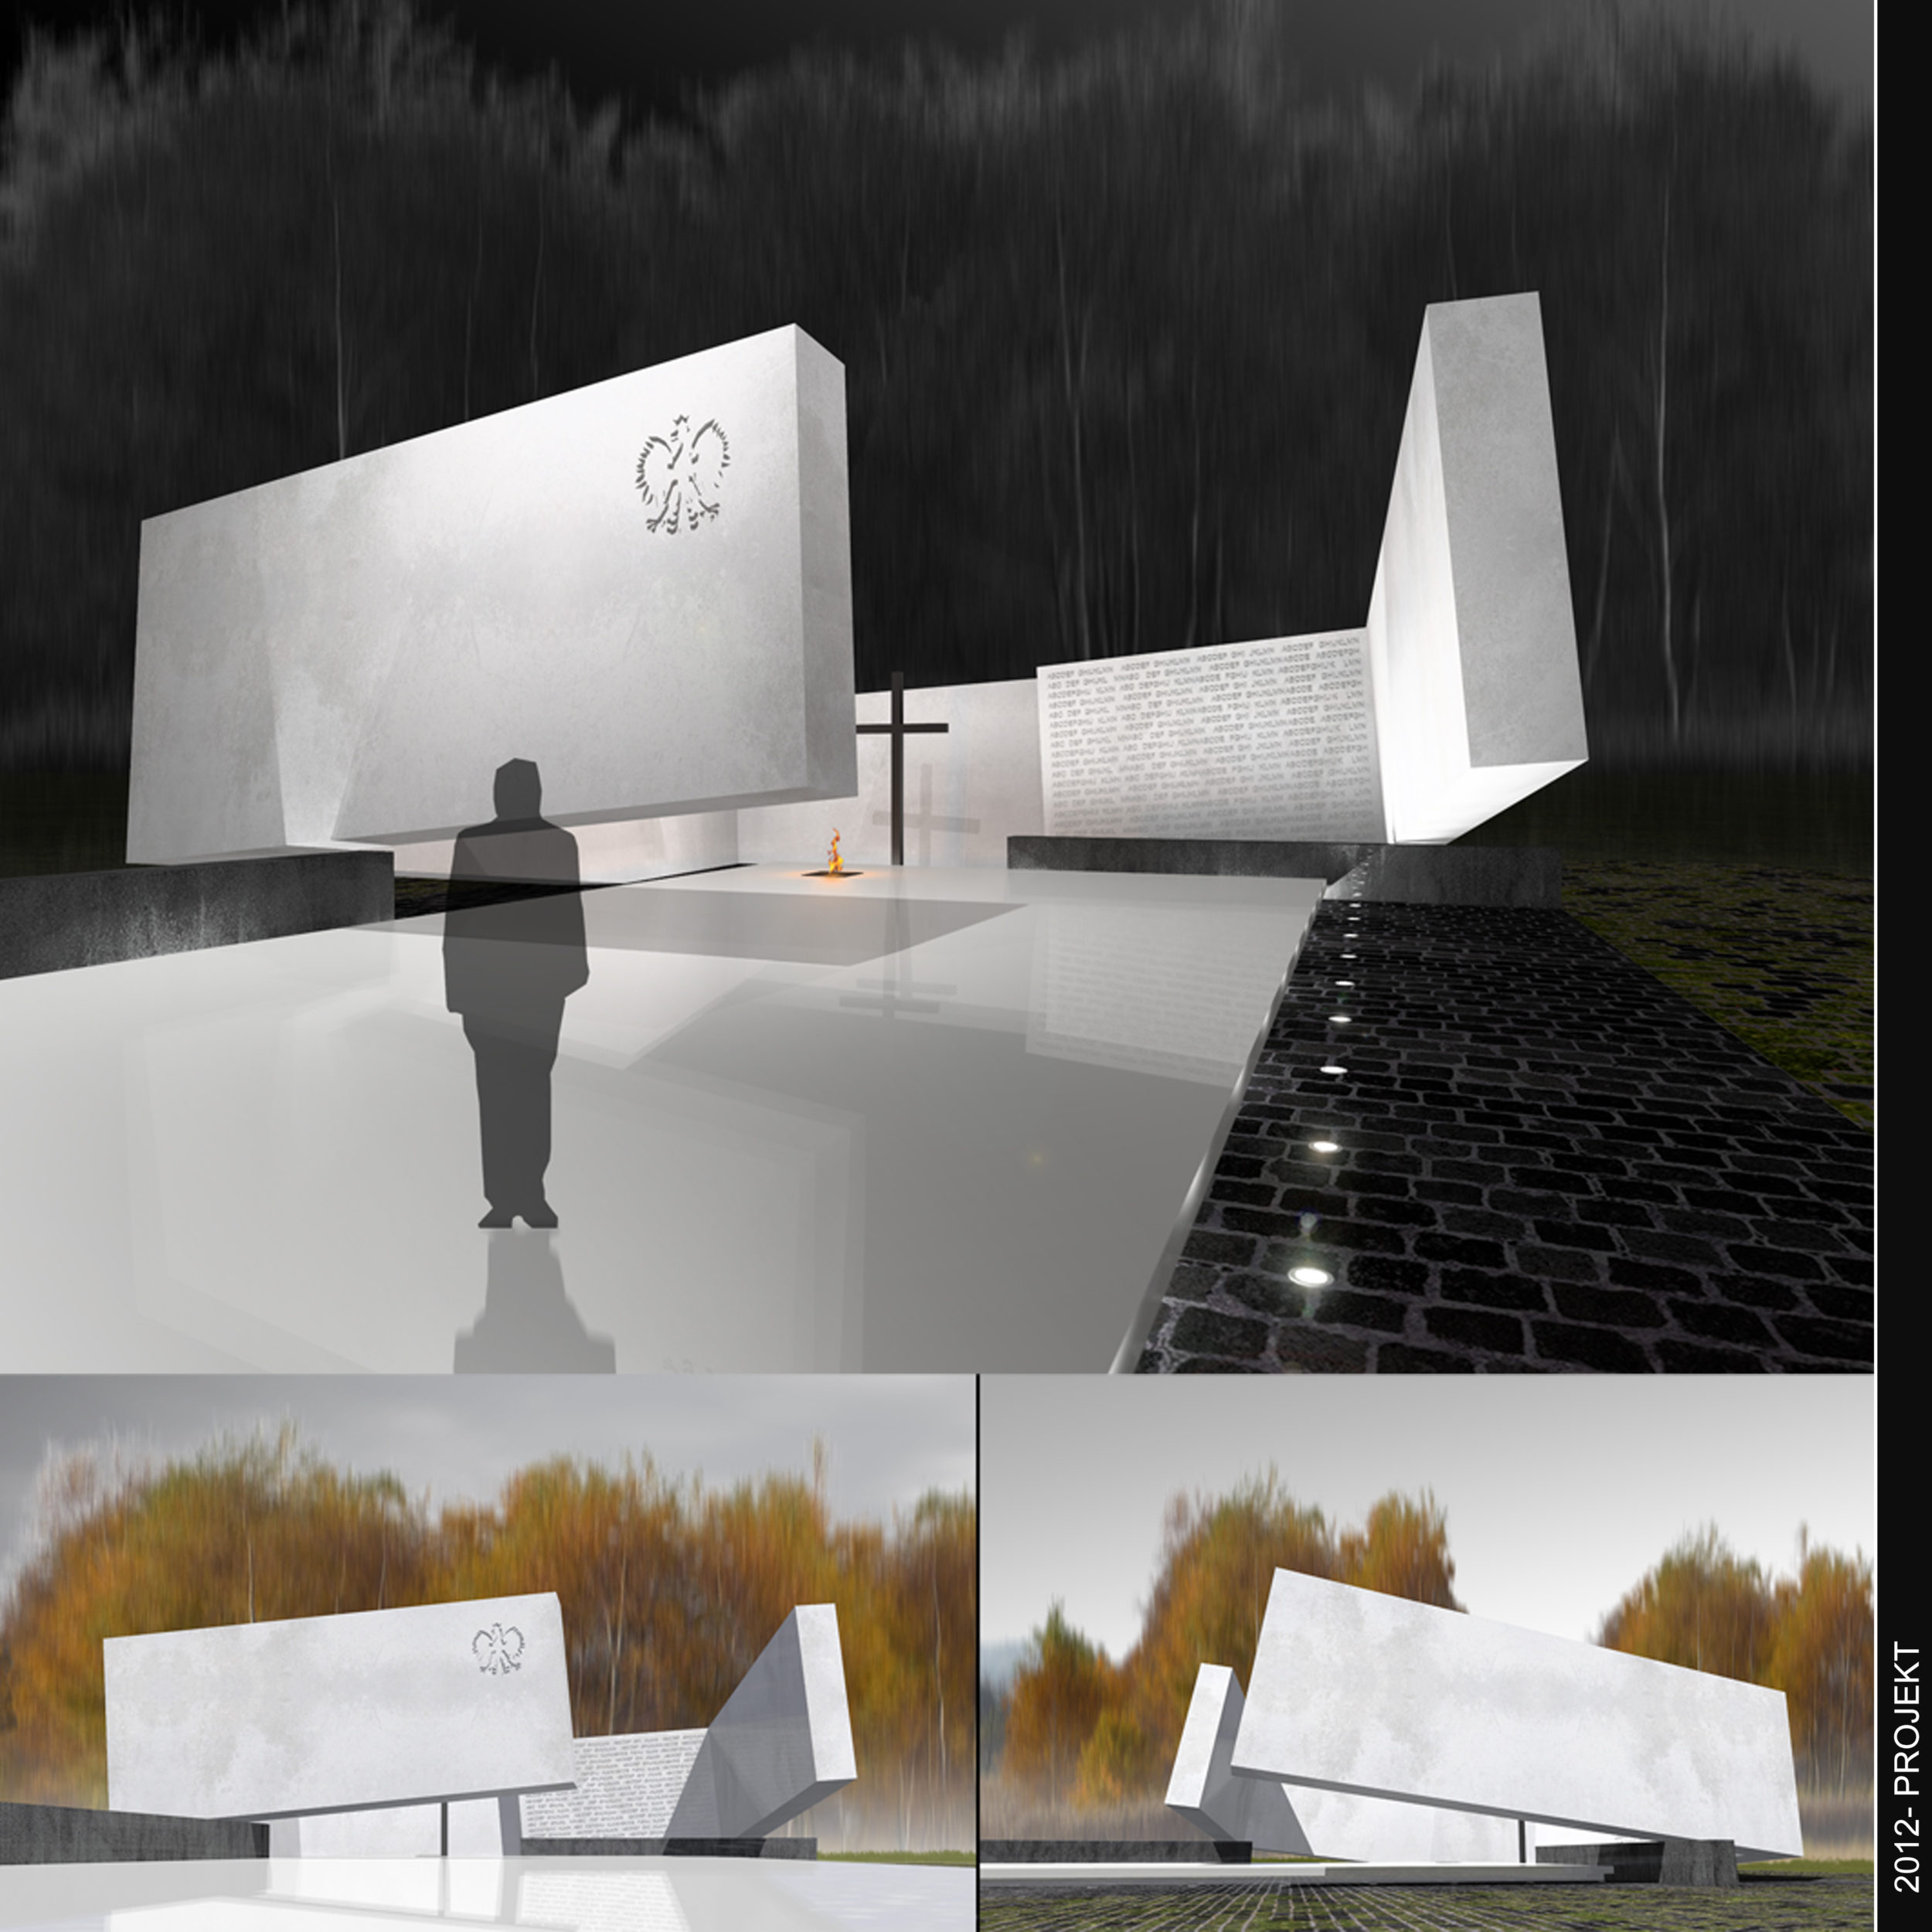 Międzynarodowy konkurs na opracowanie koncepcji pomnika upamiętniającego ofiary katastrofy lotniczej, która miała miejsce pod Smoleńskiem 10 kwietnia 2010 roku